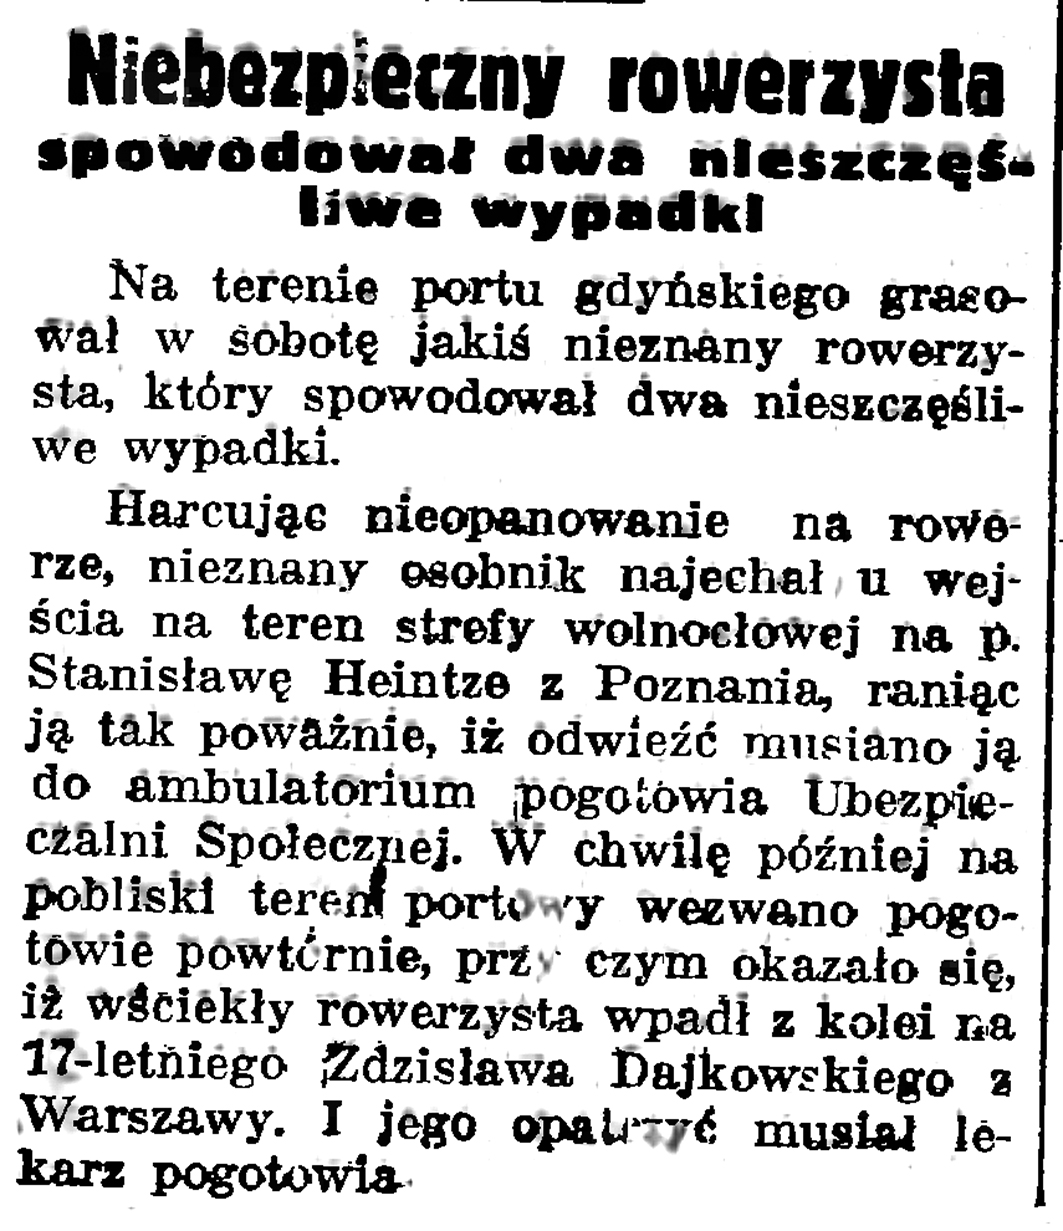 Niebezpieczny rowerzysta spowodował dwa nieszczęśliwe wypadki // Gazeta Gdańska. - 1937, nr 151, s. 6